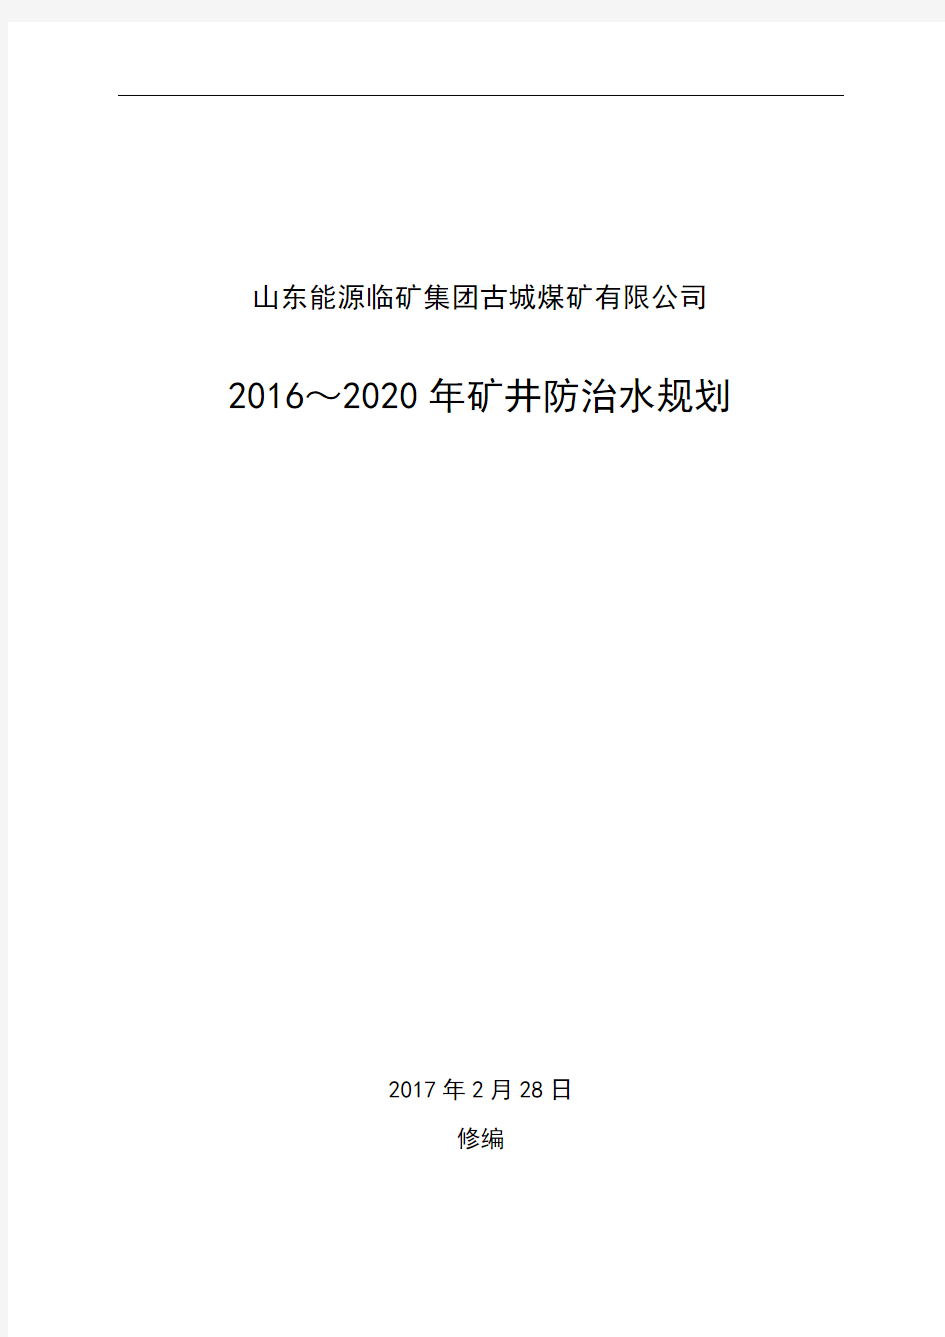 2016~2020矿井防治水中长期规划